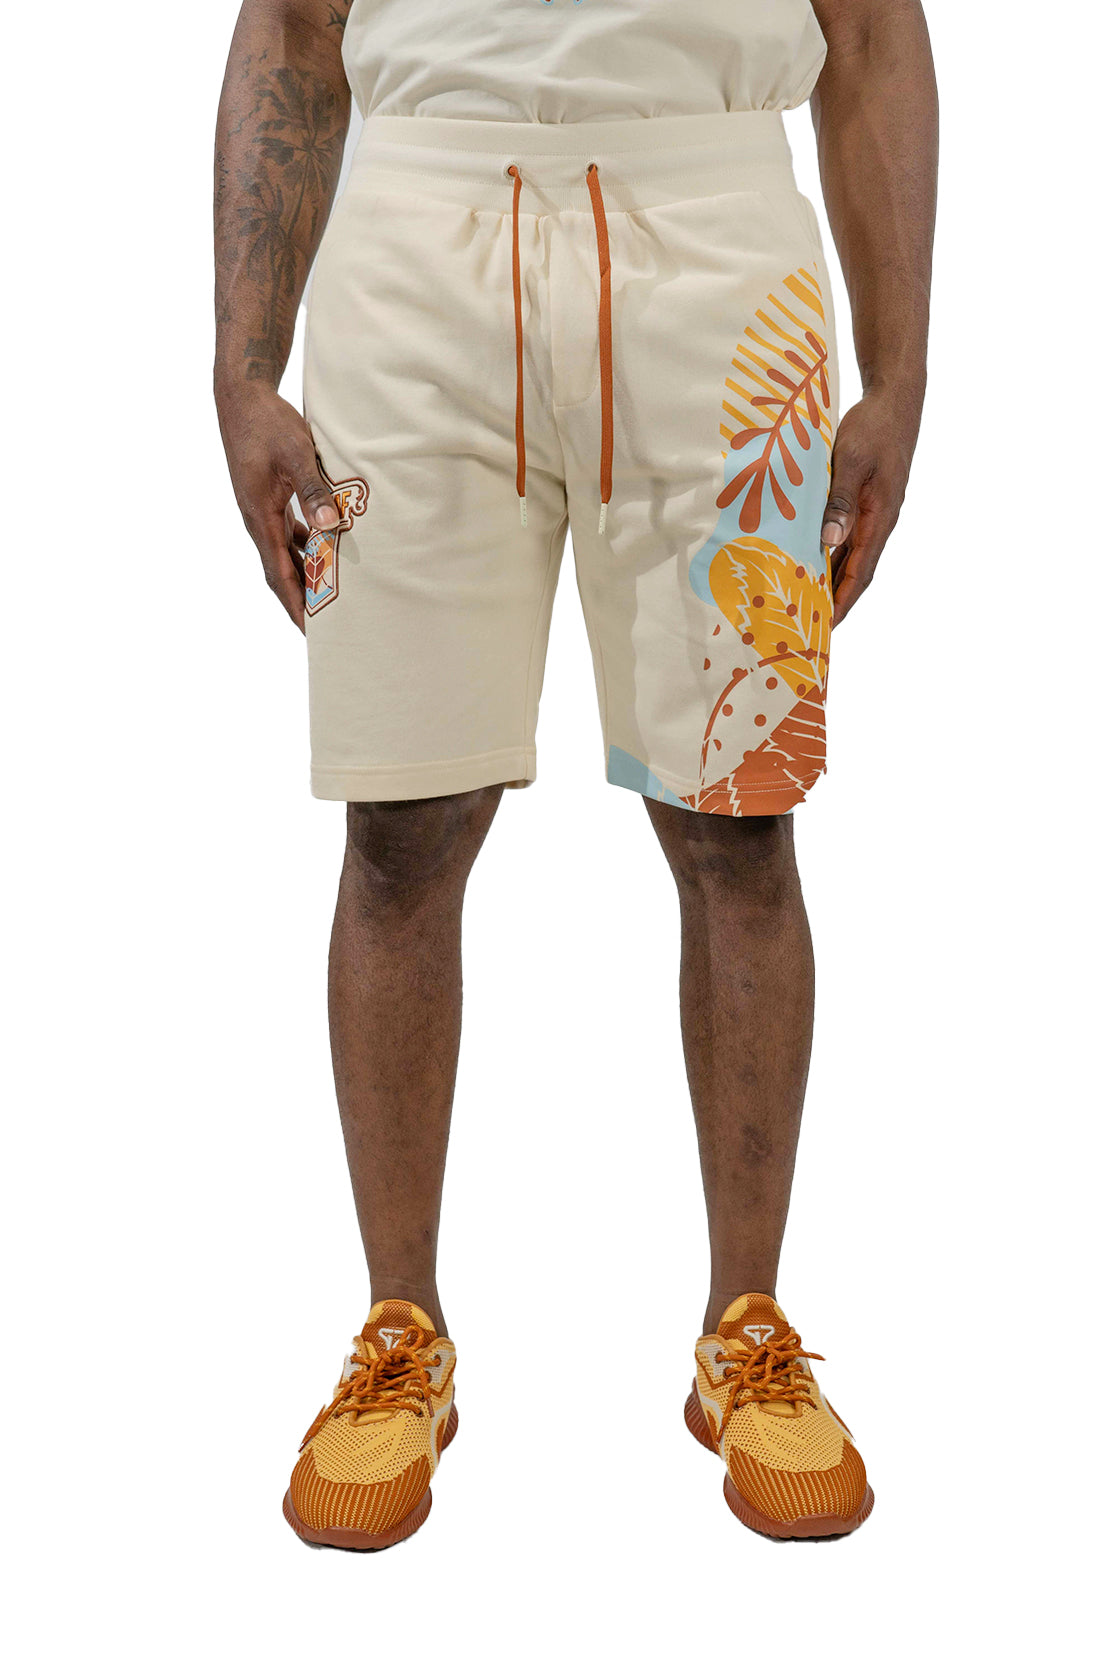 Blac Leaf Mens Athletic Shorts b7 sz 2x or 20 - Athletic apparel